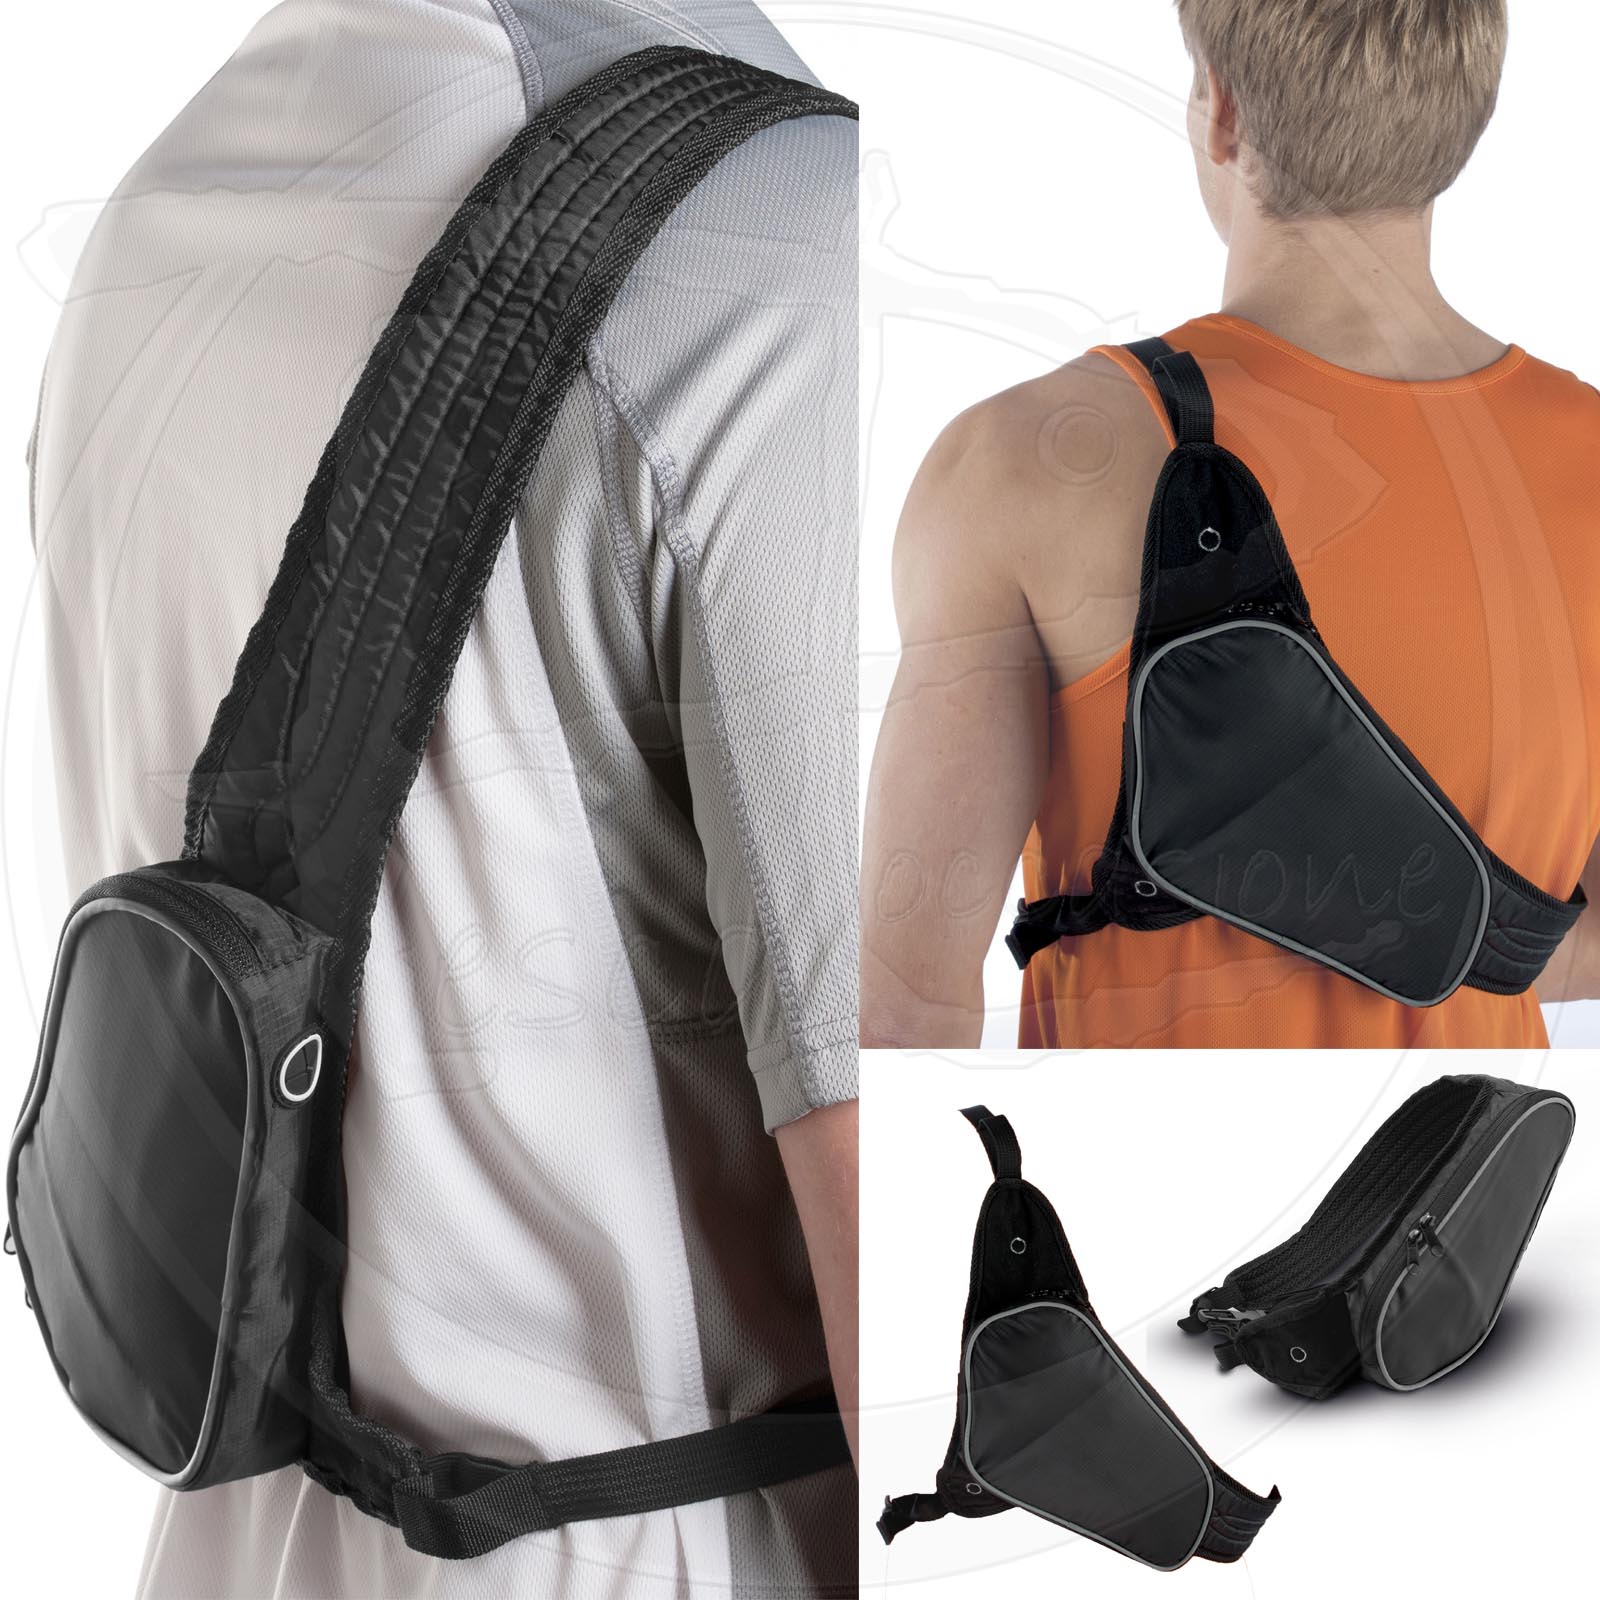 Sports shoulder strap for smartphones